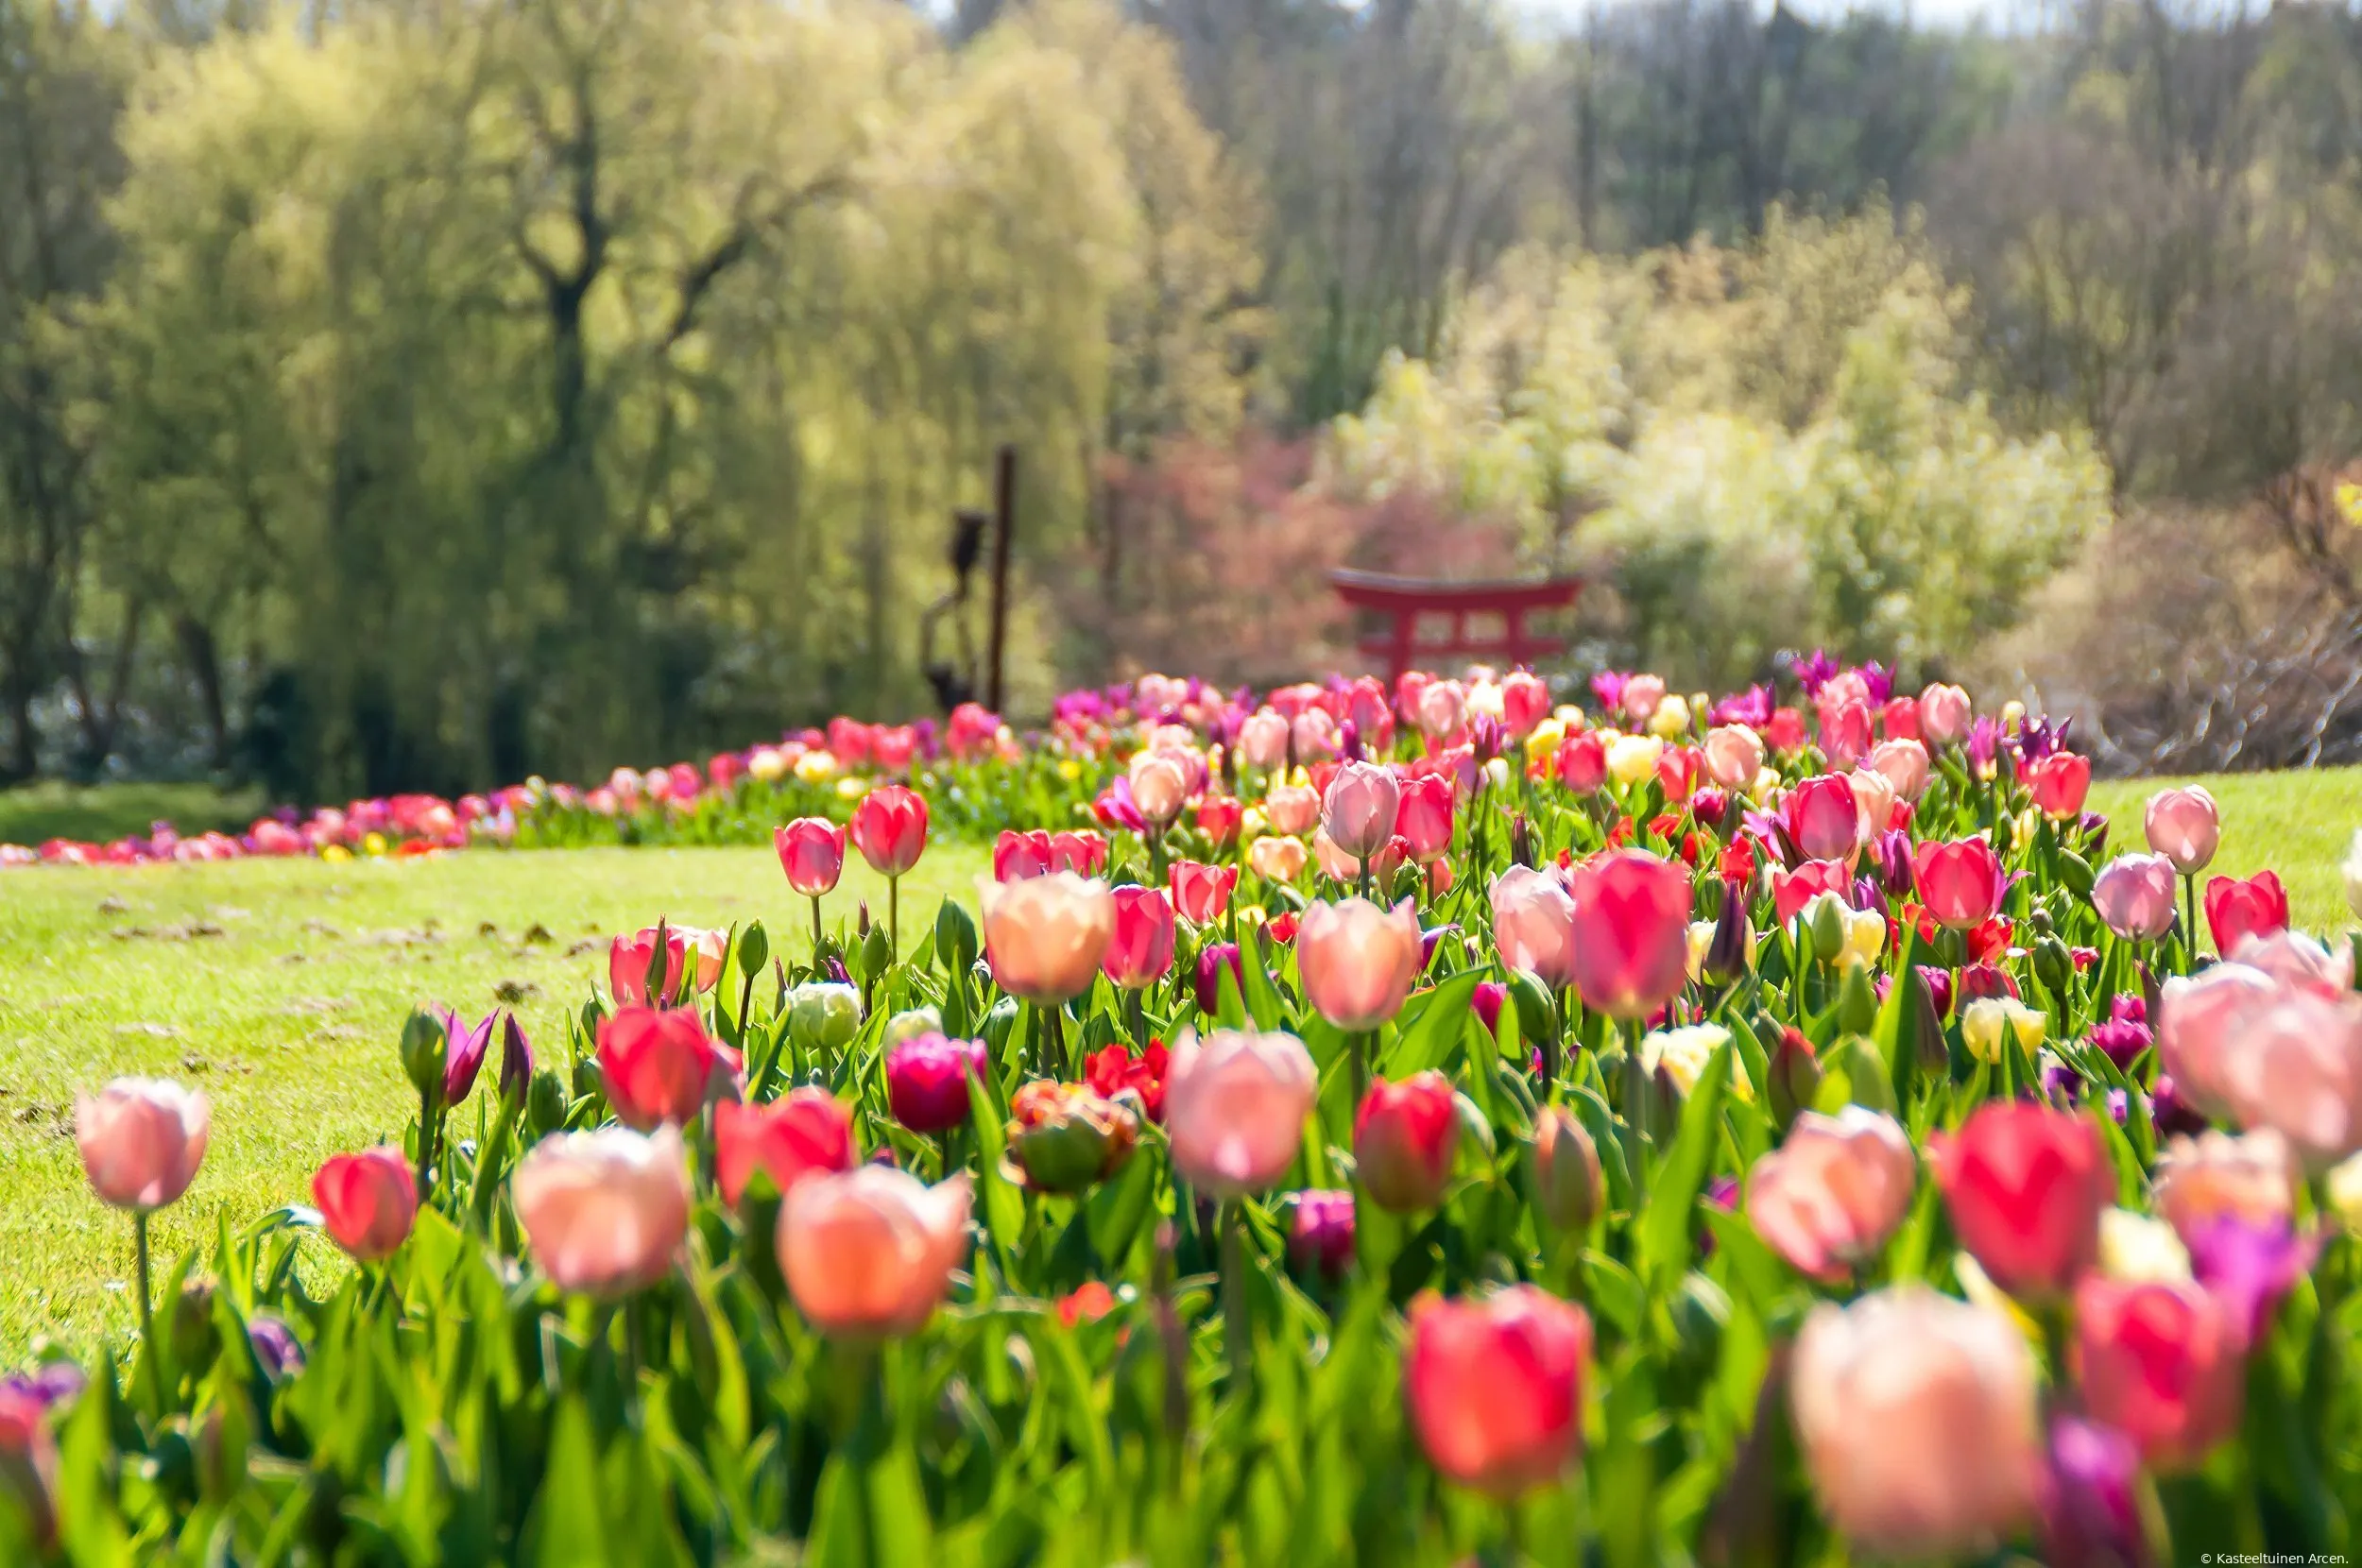 kasteeltuinenarcen voorjaar tulpen